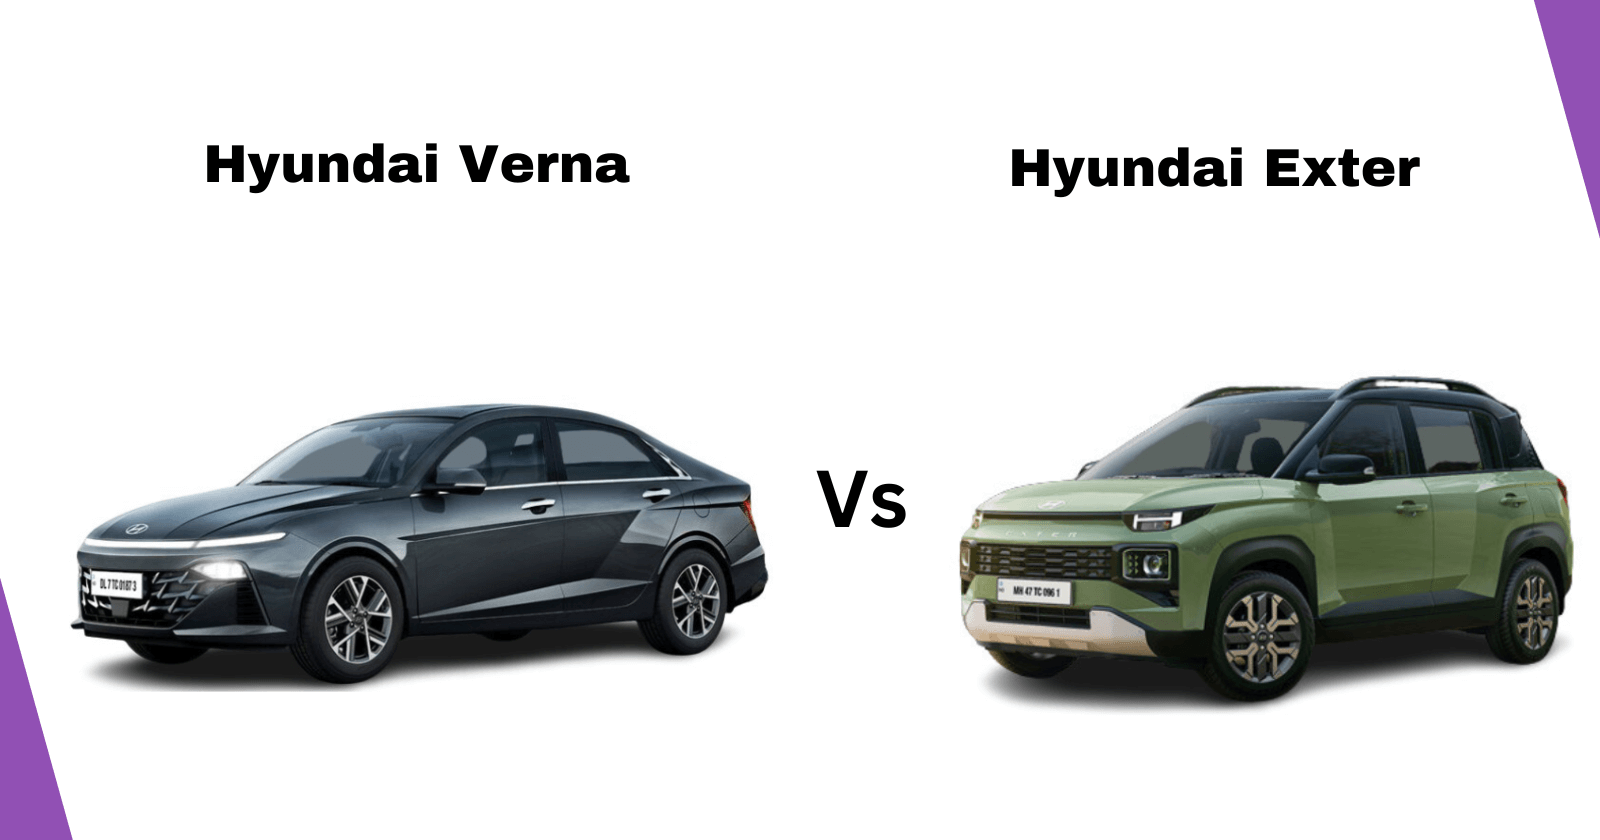 Hyundai Verna vs Hyundai Exter